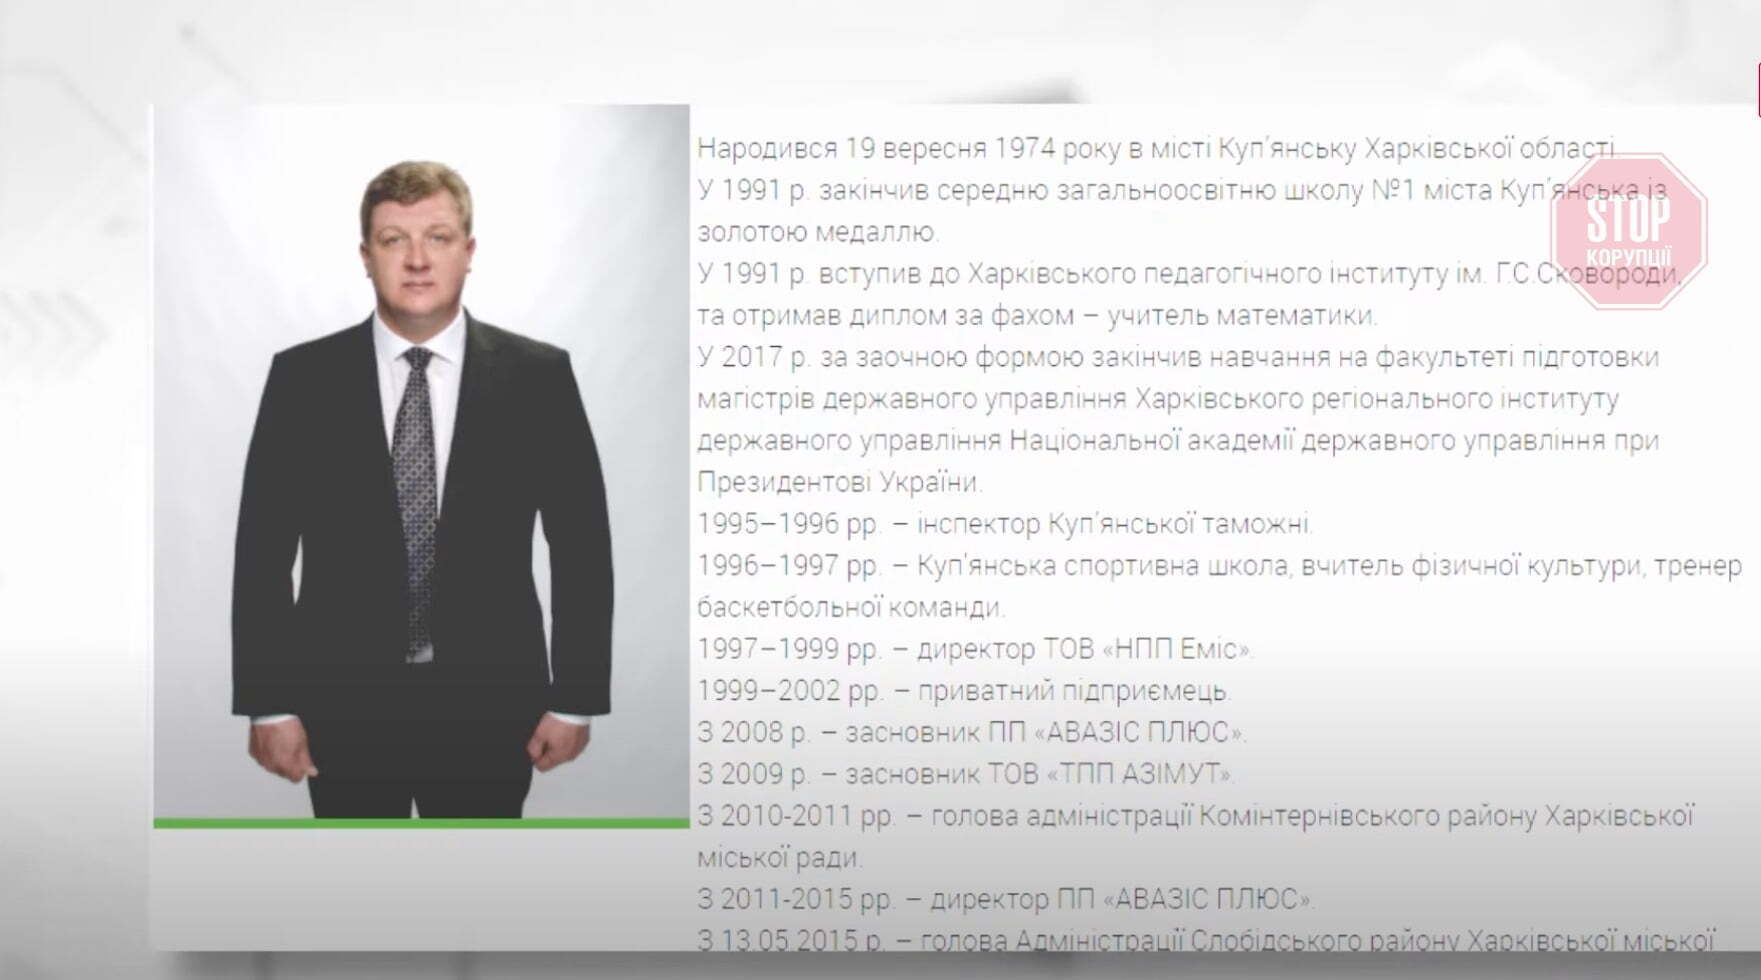  У 2009 р. Ільєнко заснував фірму ''Азимут'' Фото: скріншот